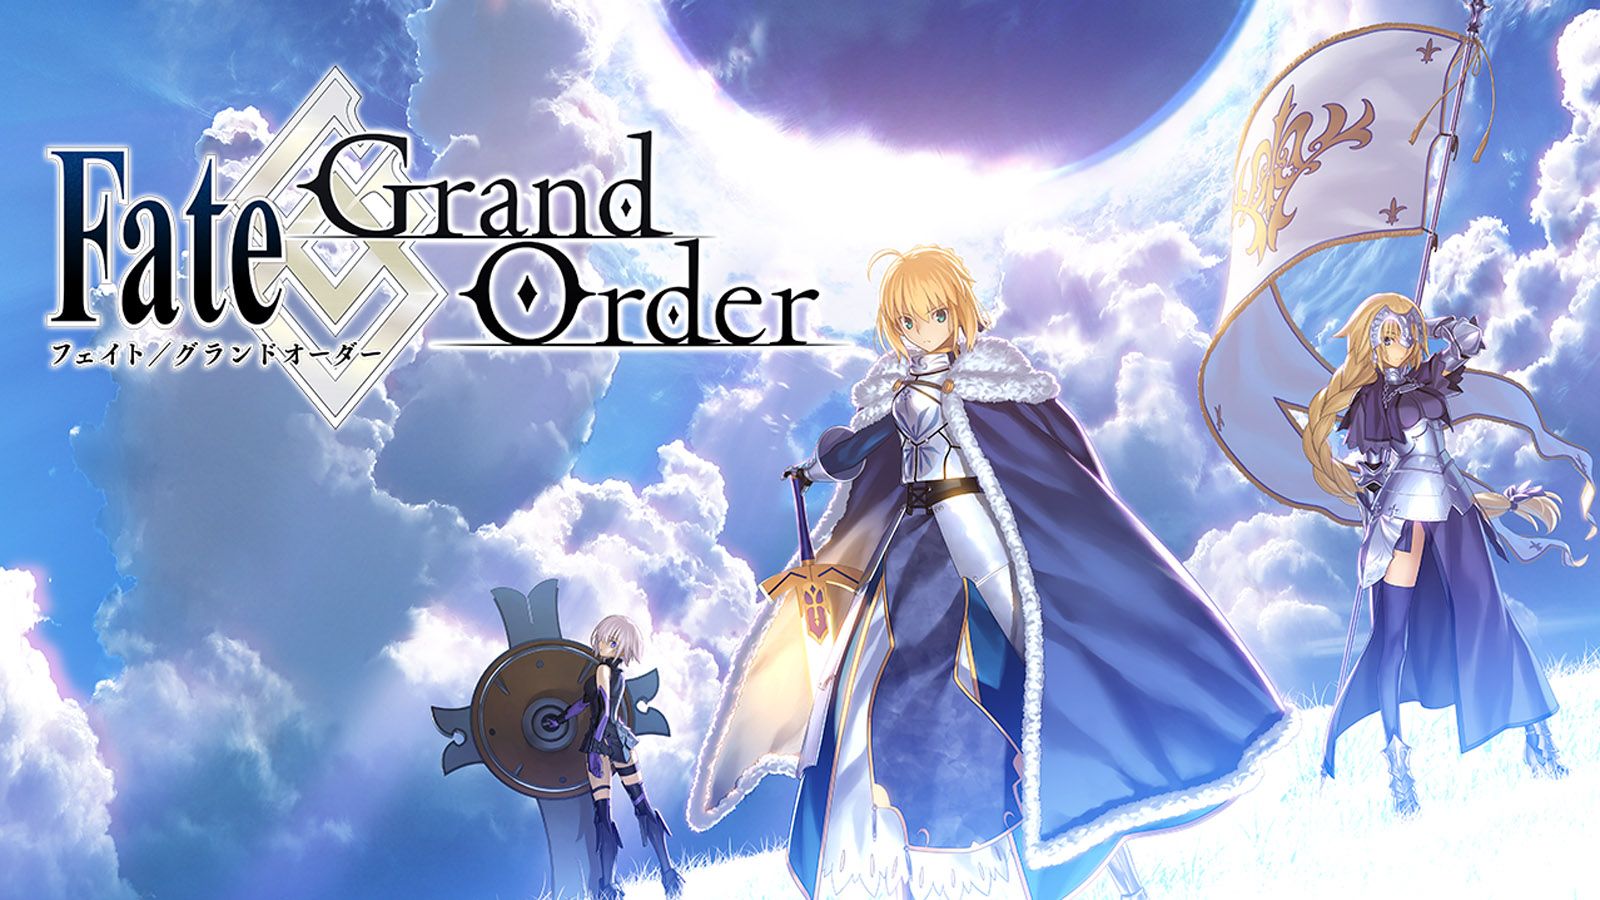 FGOのサーヴァント（英霊）のモデル・元ネタまとめ【Fate/Grand Order】